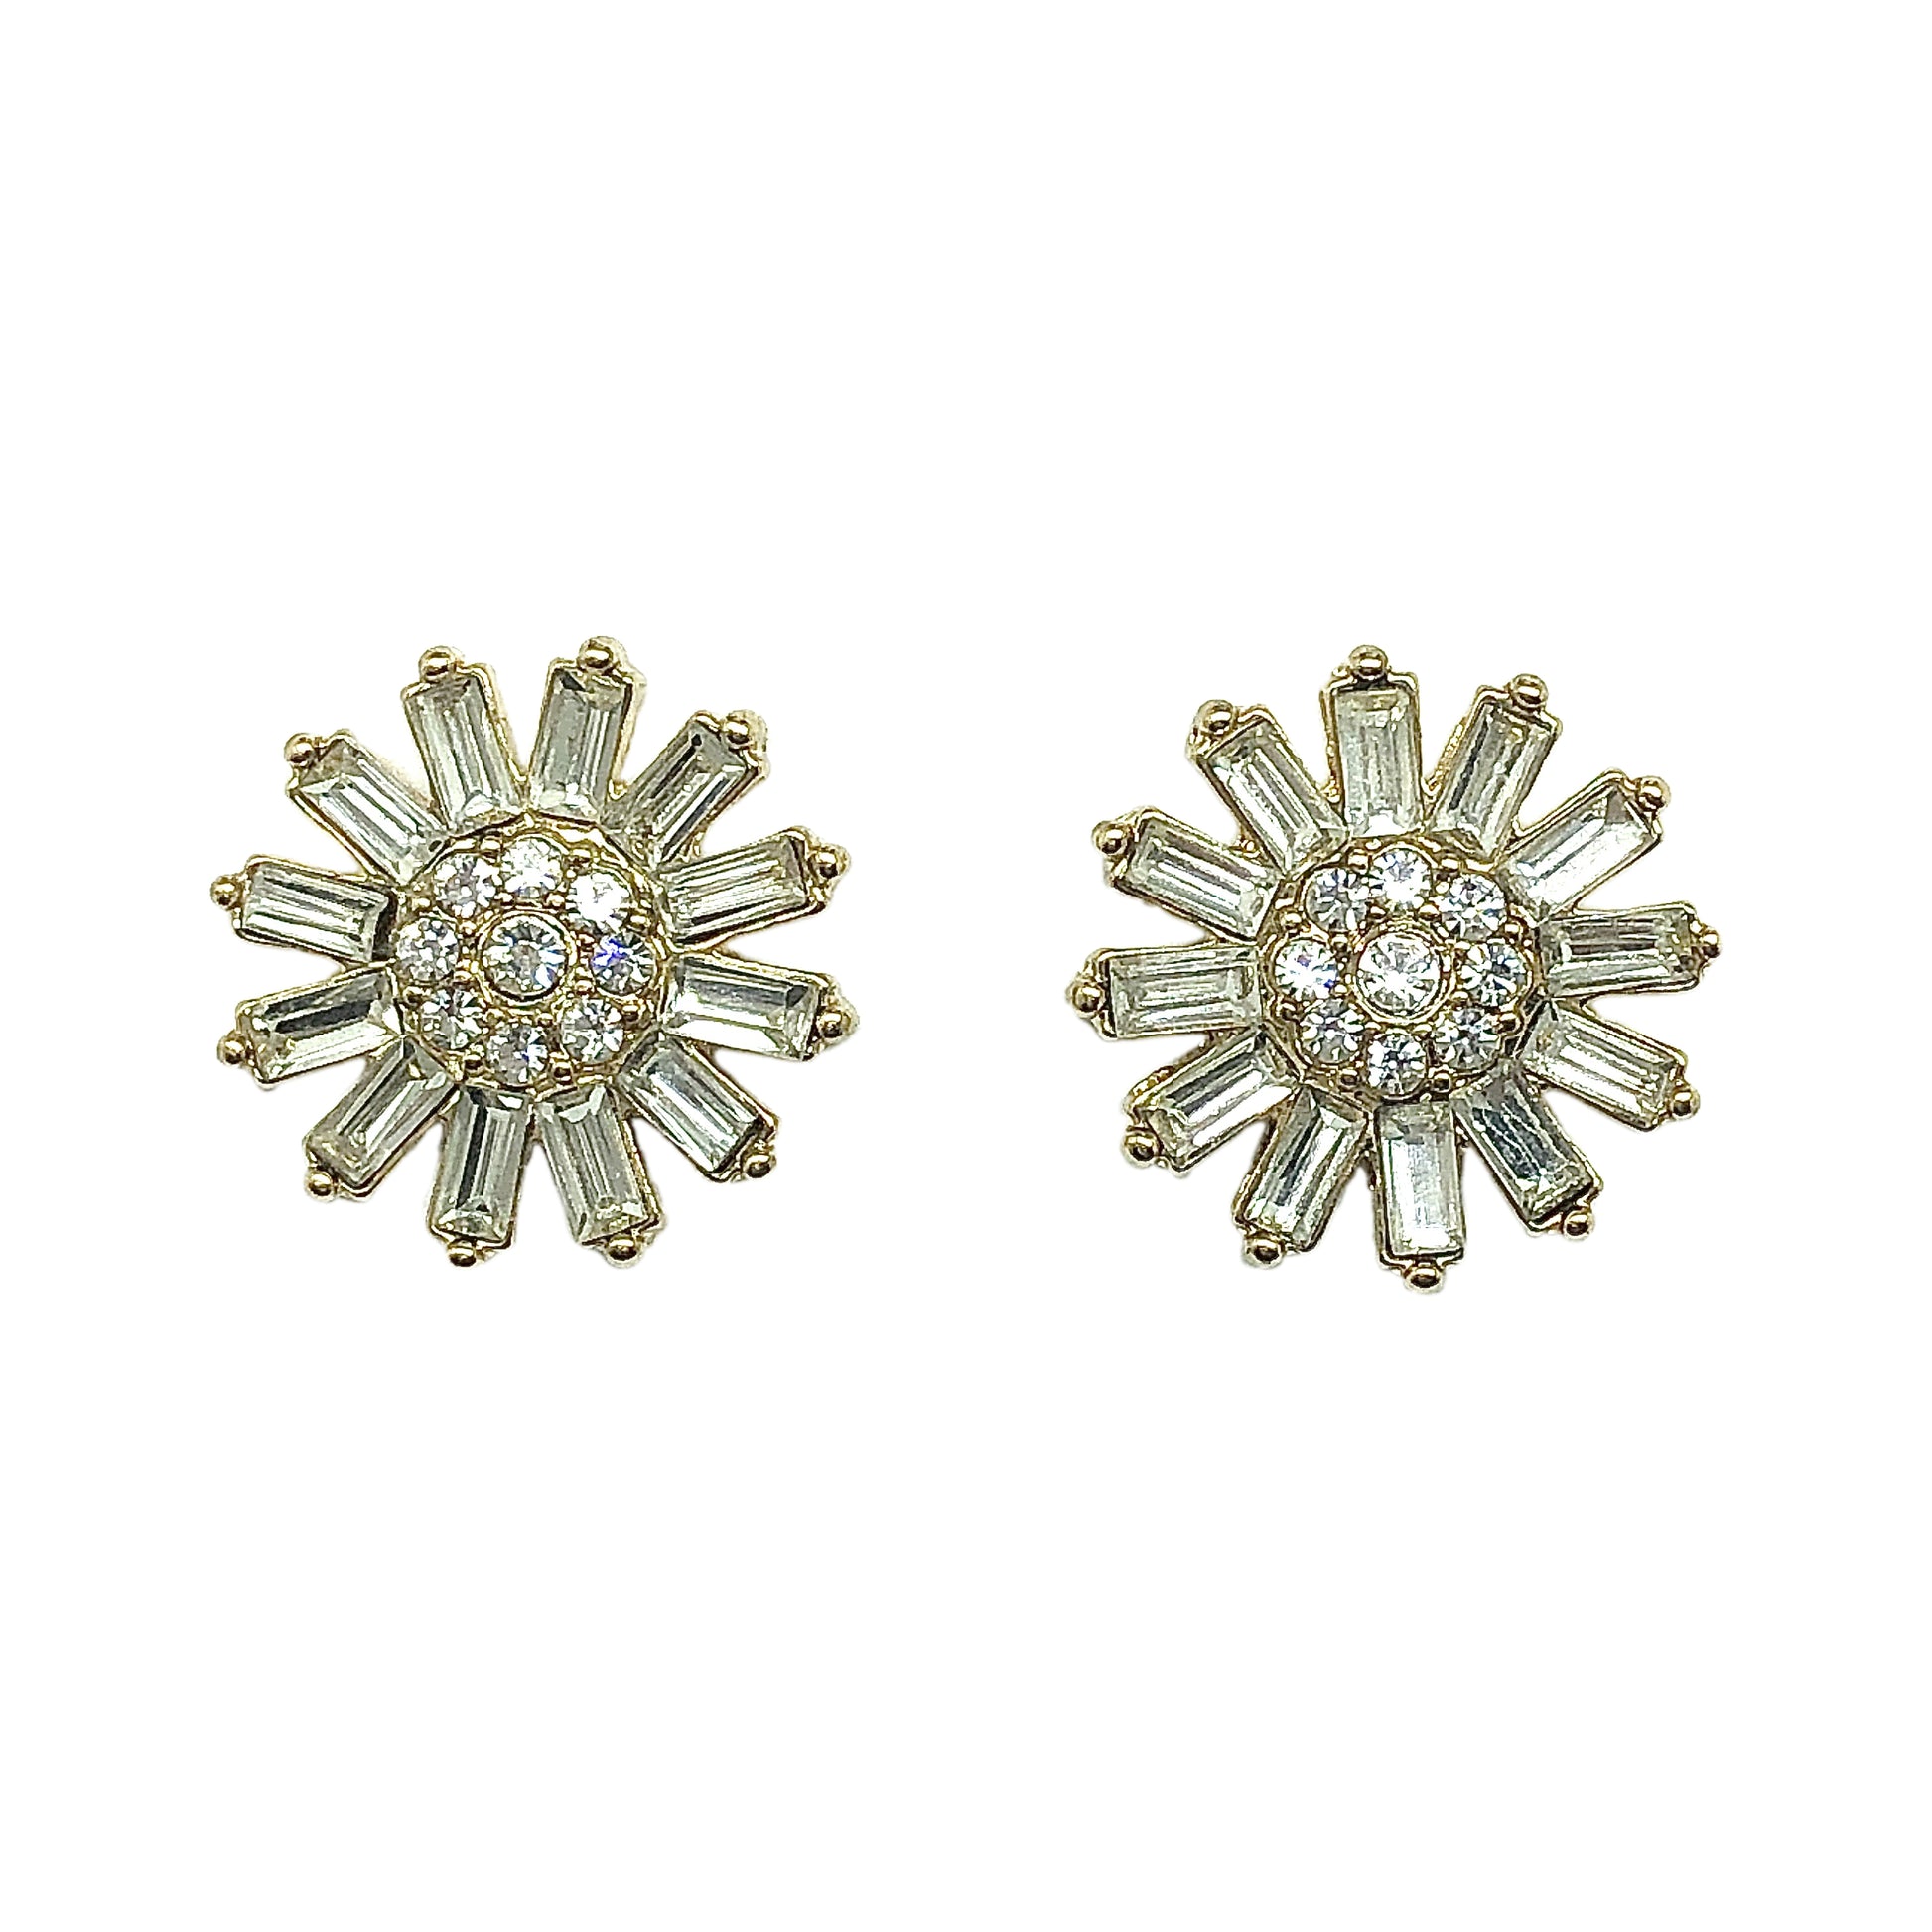 Shining White Crystal in Golden Daisy Flower Design Earrings